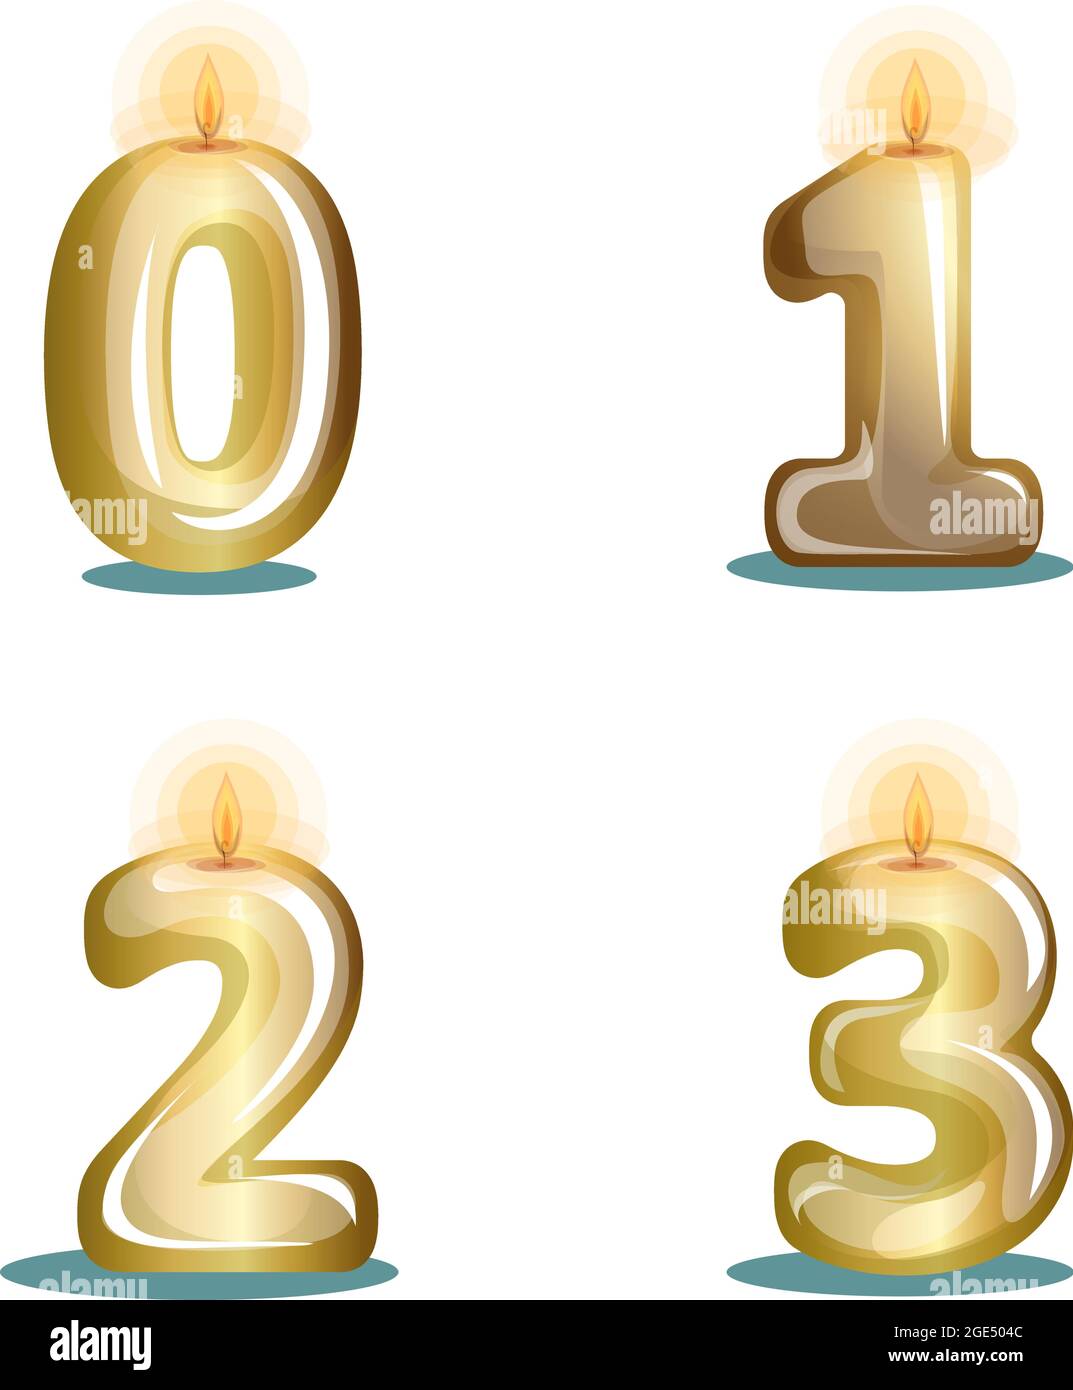 Immagine vettoriale di candele metallizzate in oro sotto forma di numeri su sfondo bianco in stile cartoon Illustrazione Vettoriale